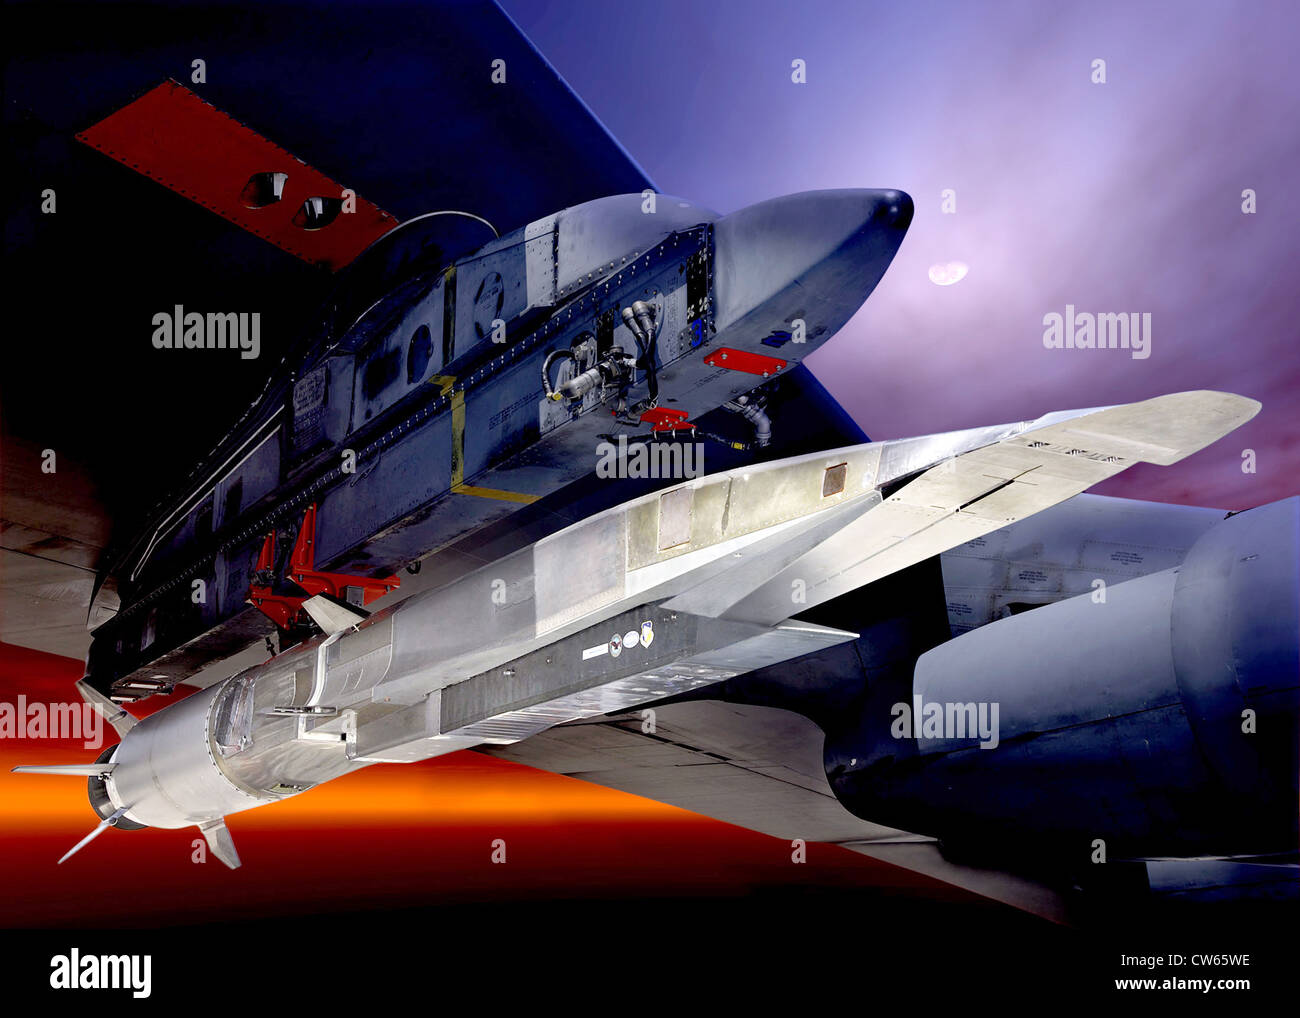 Un grafico che mostra l'X-51A Waverider un volo ipersonico veicolo alimentato da un Pratt Whitney Rocketdyne SJY61 scramjet motore, è progettato per correre sulla propria shockwavem e accelerare fino a circa Mach 6. Foto Stock